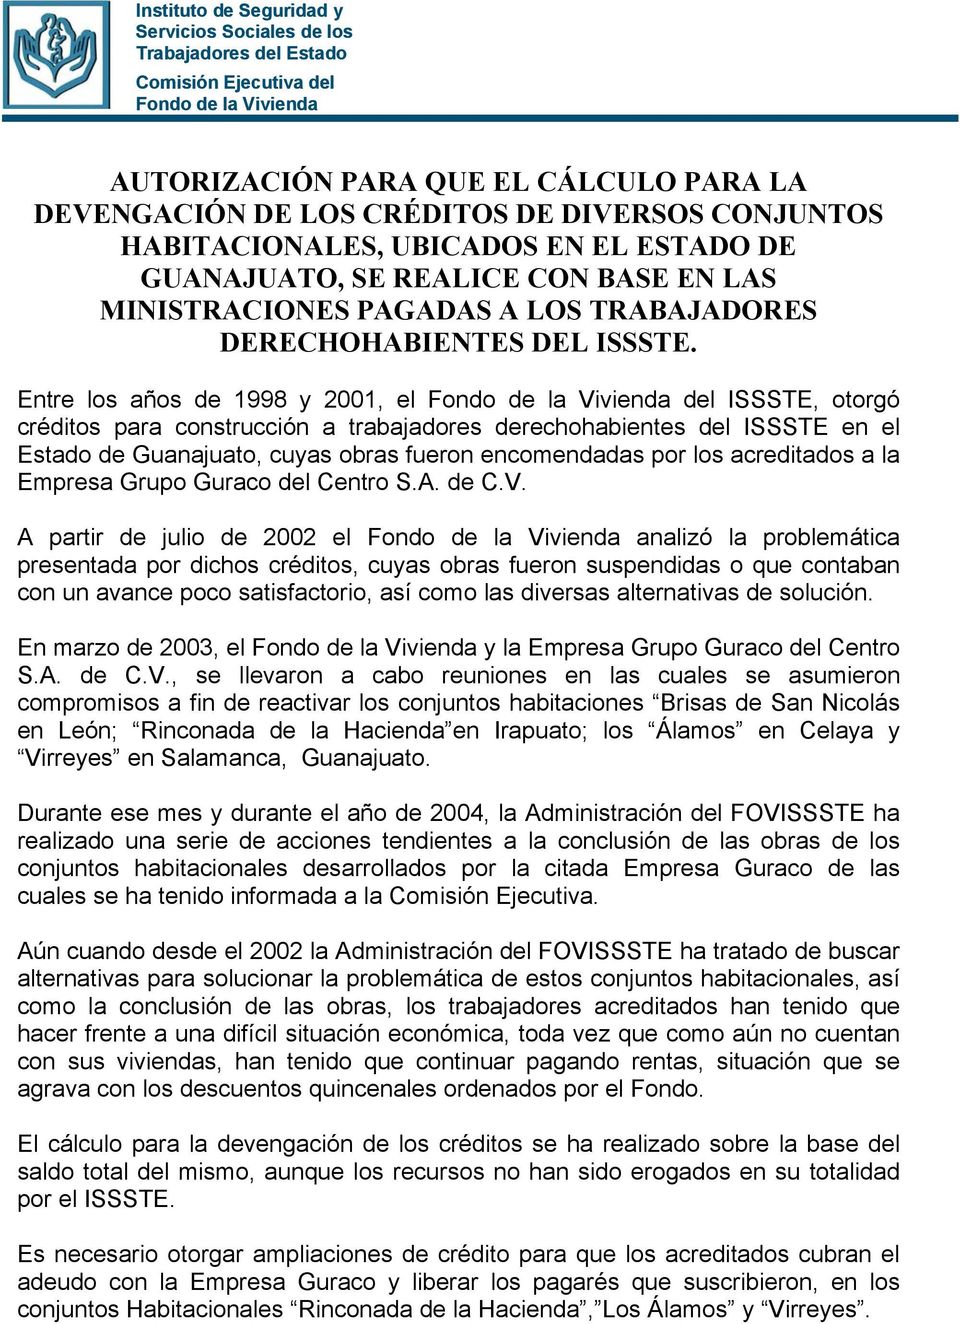 Entre los años de 1998 y 2001, el Fondo de la Vivienda del ISSSTE, otorgó créditos para construcción a trabajadores derechohabientes del ISSSTE en el Estado de Guanajuato, cuyas obras fueron